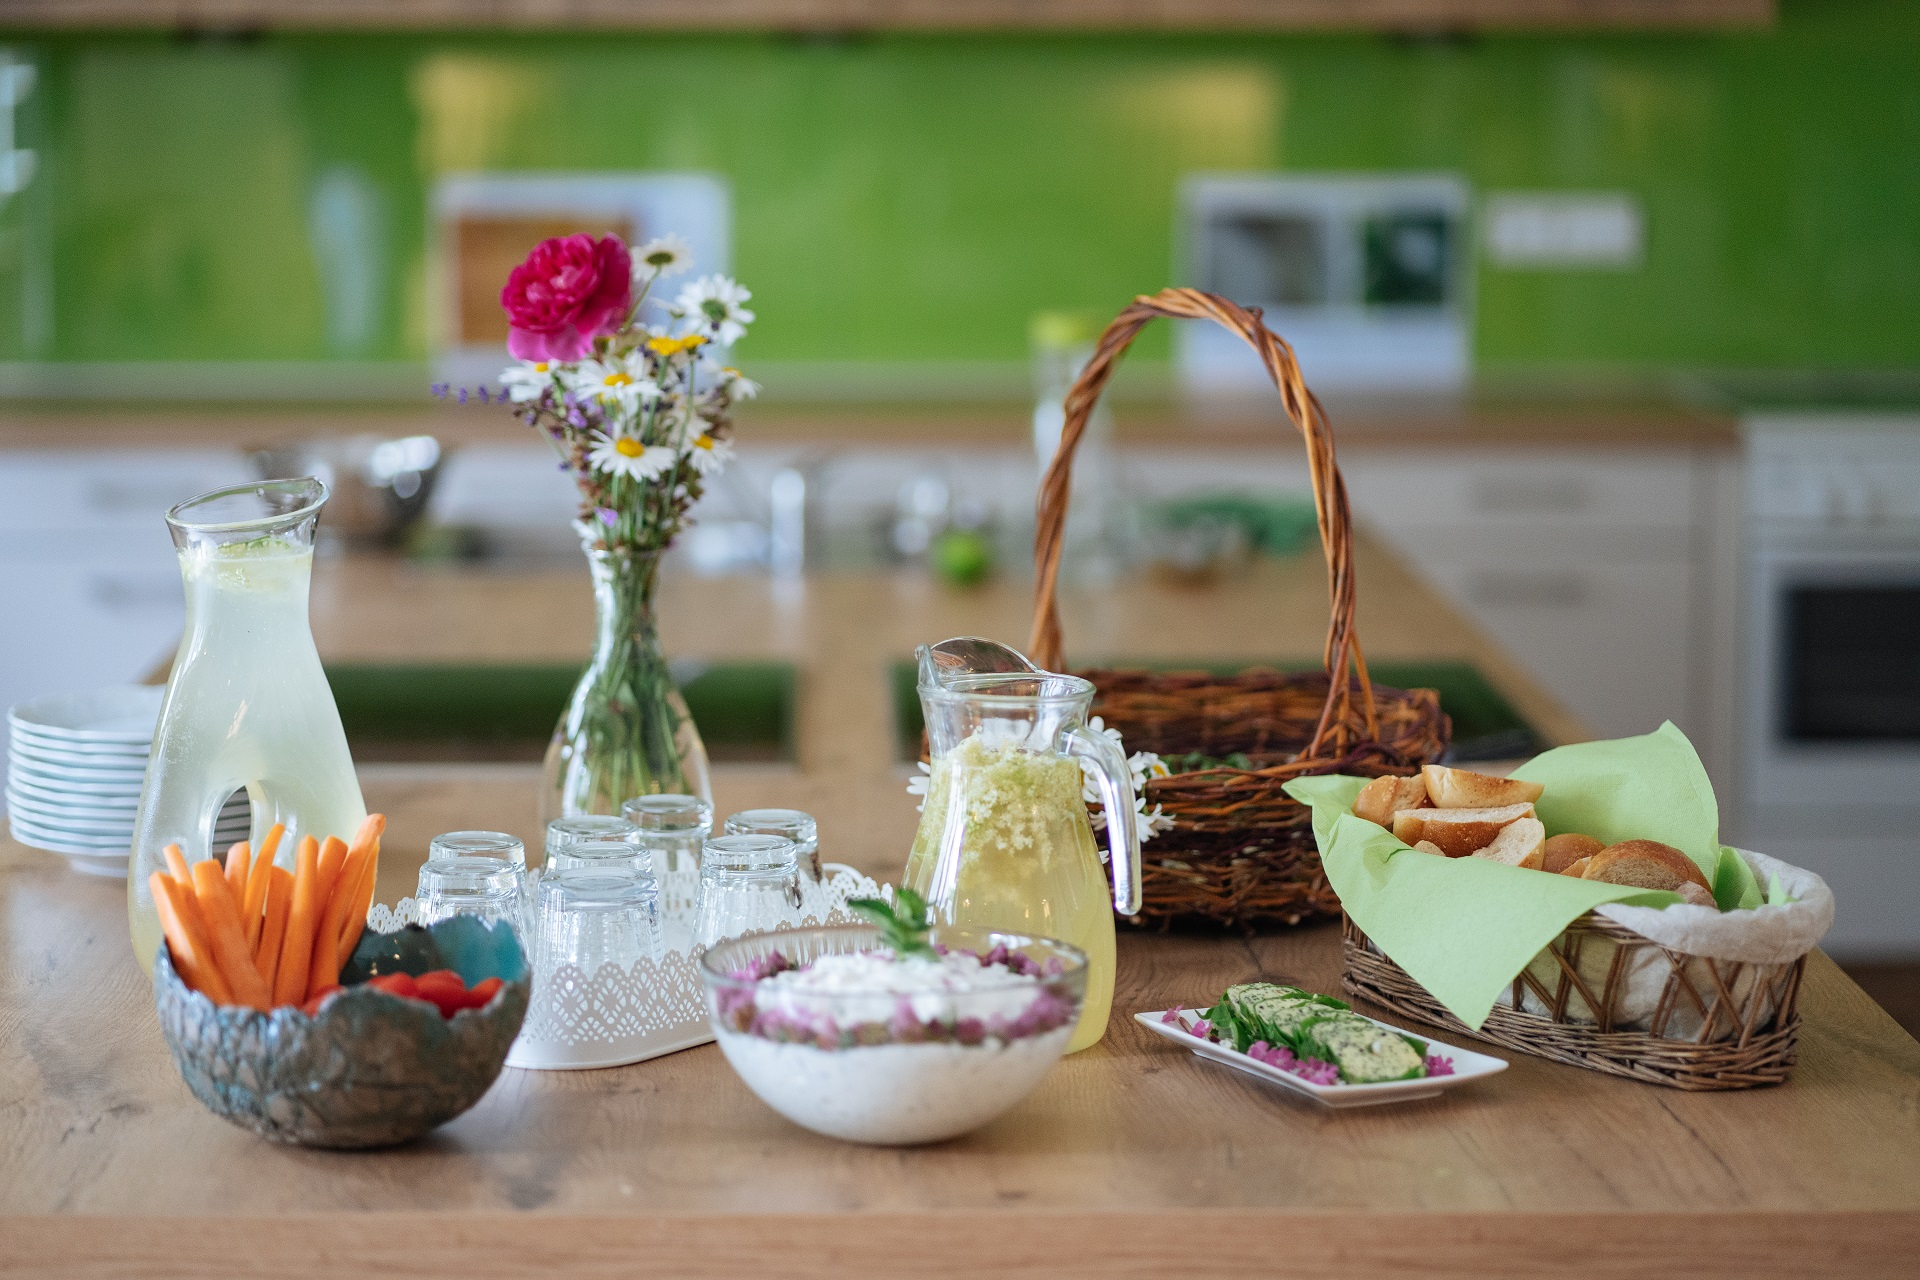 Ein Tisch mit einem bunten Blumenstrauß, einem Korb voll Brot, Eine lomonade zubiitet aus Holunder, ein Naturquark verfeinert mit den Kräutern, mehrere Gläser und eine Schale mit frischem Gemüse.